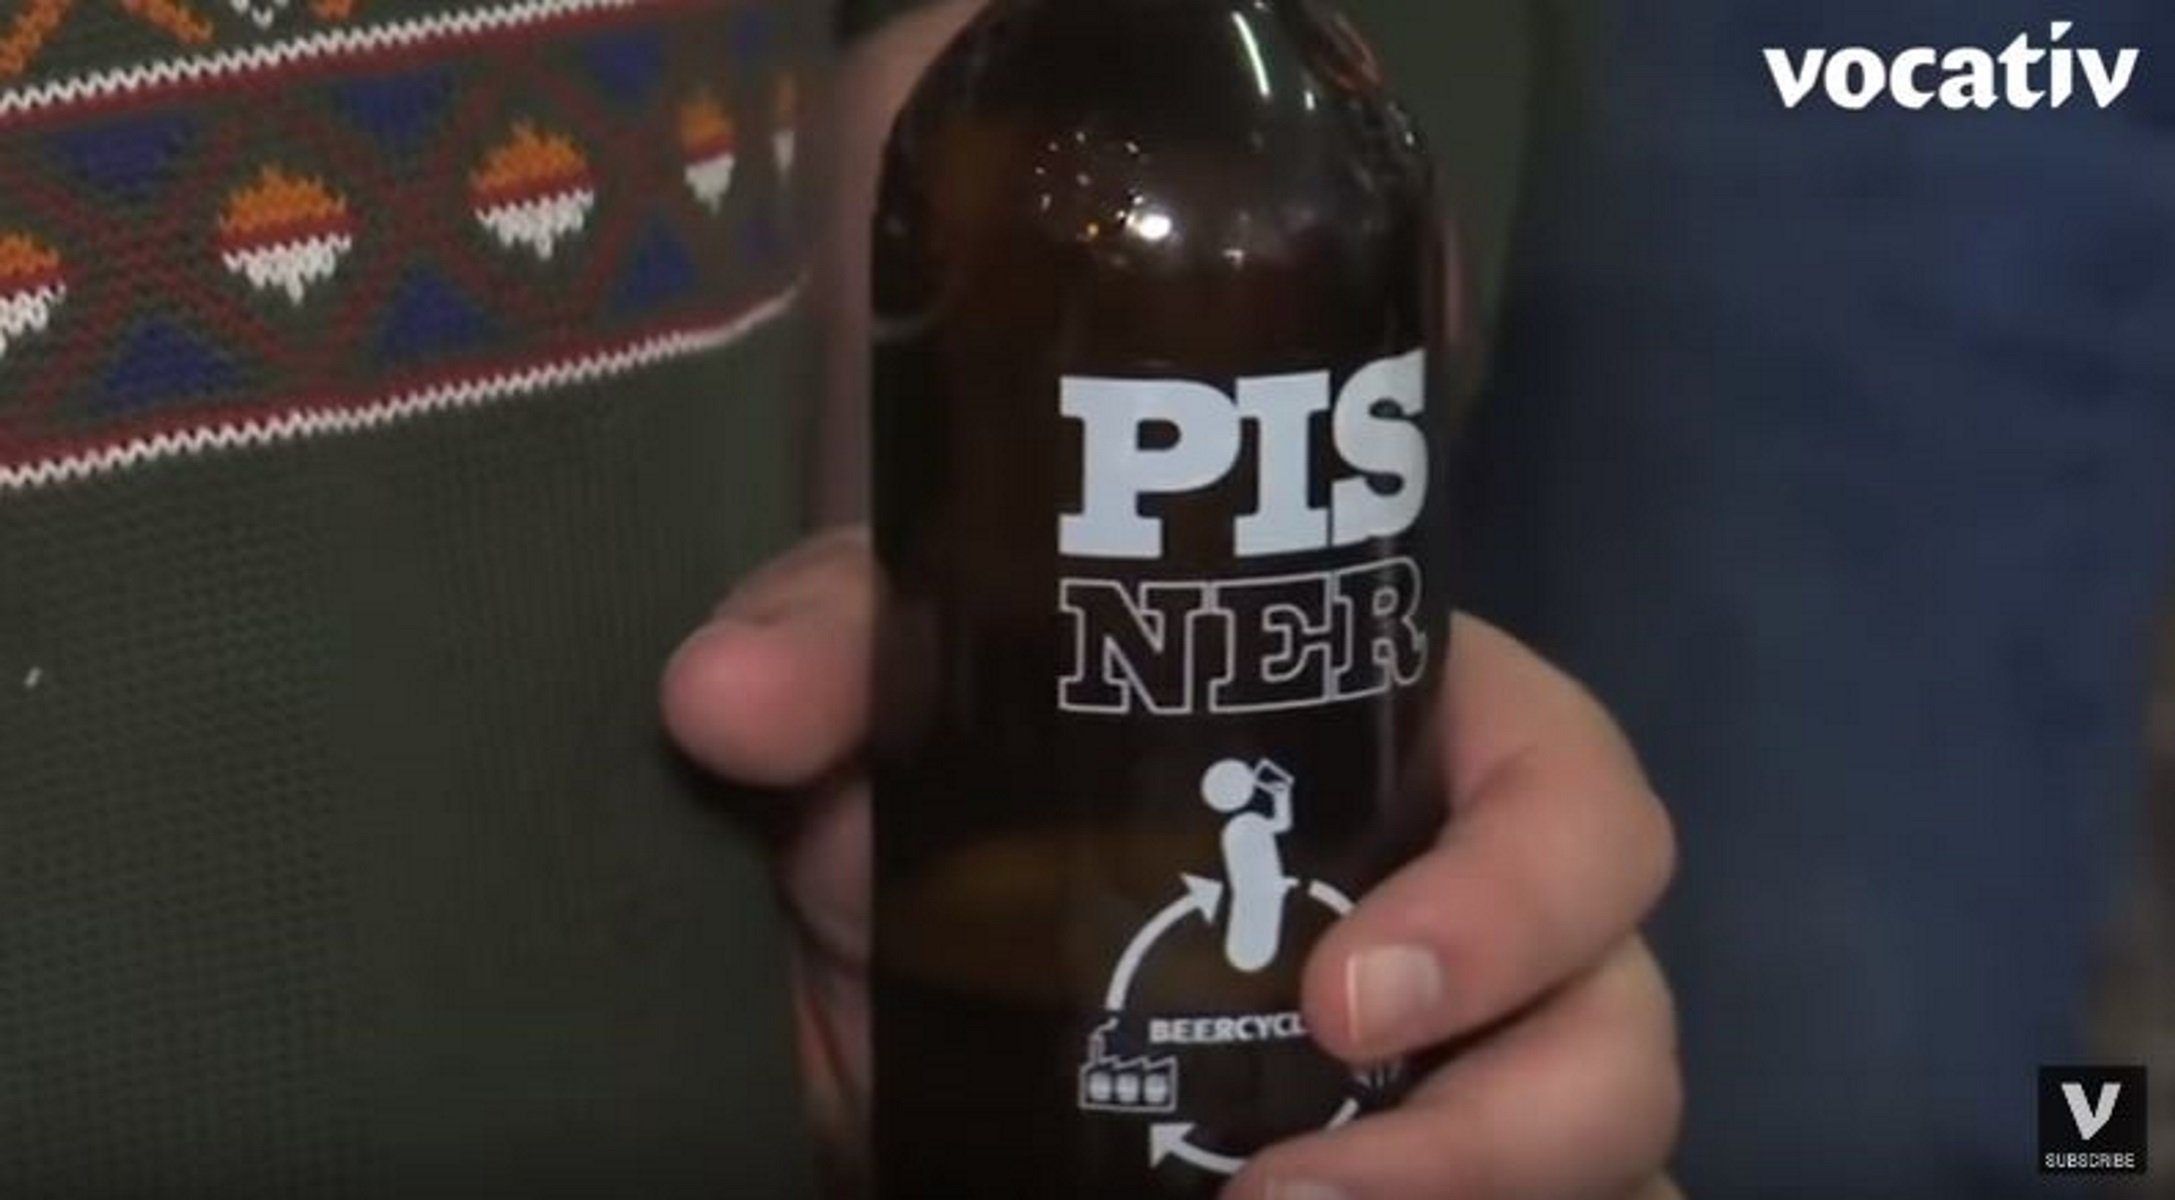 Pisner, la cervesa danesa feta amb orina